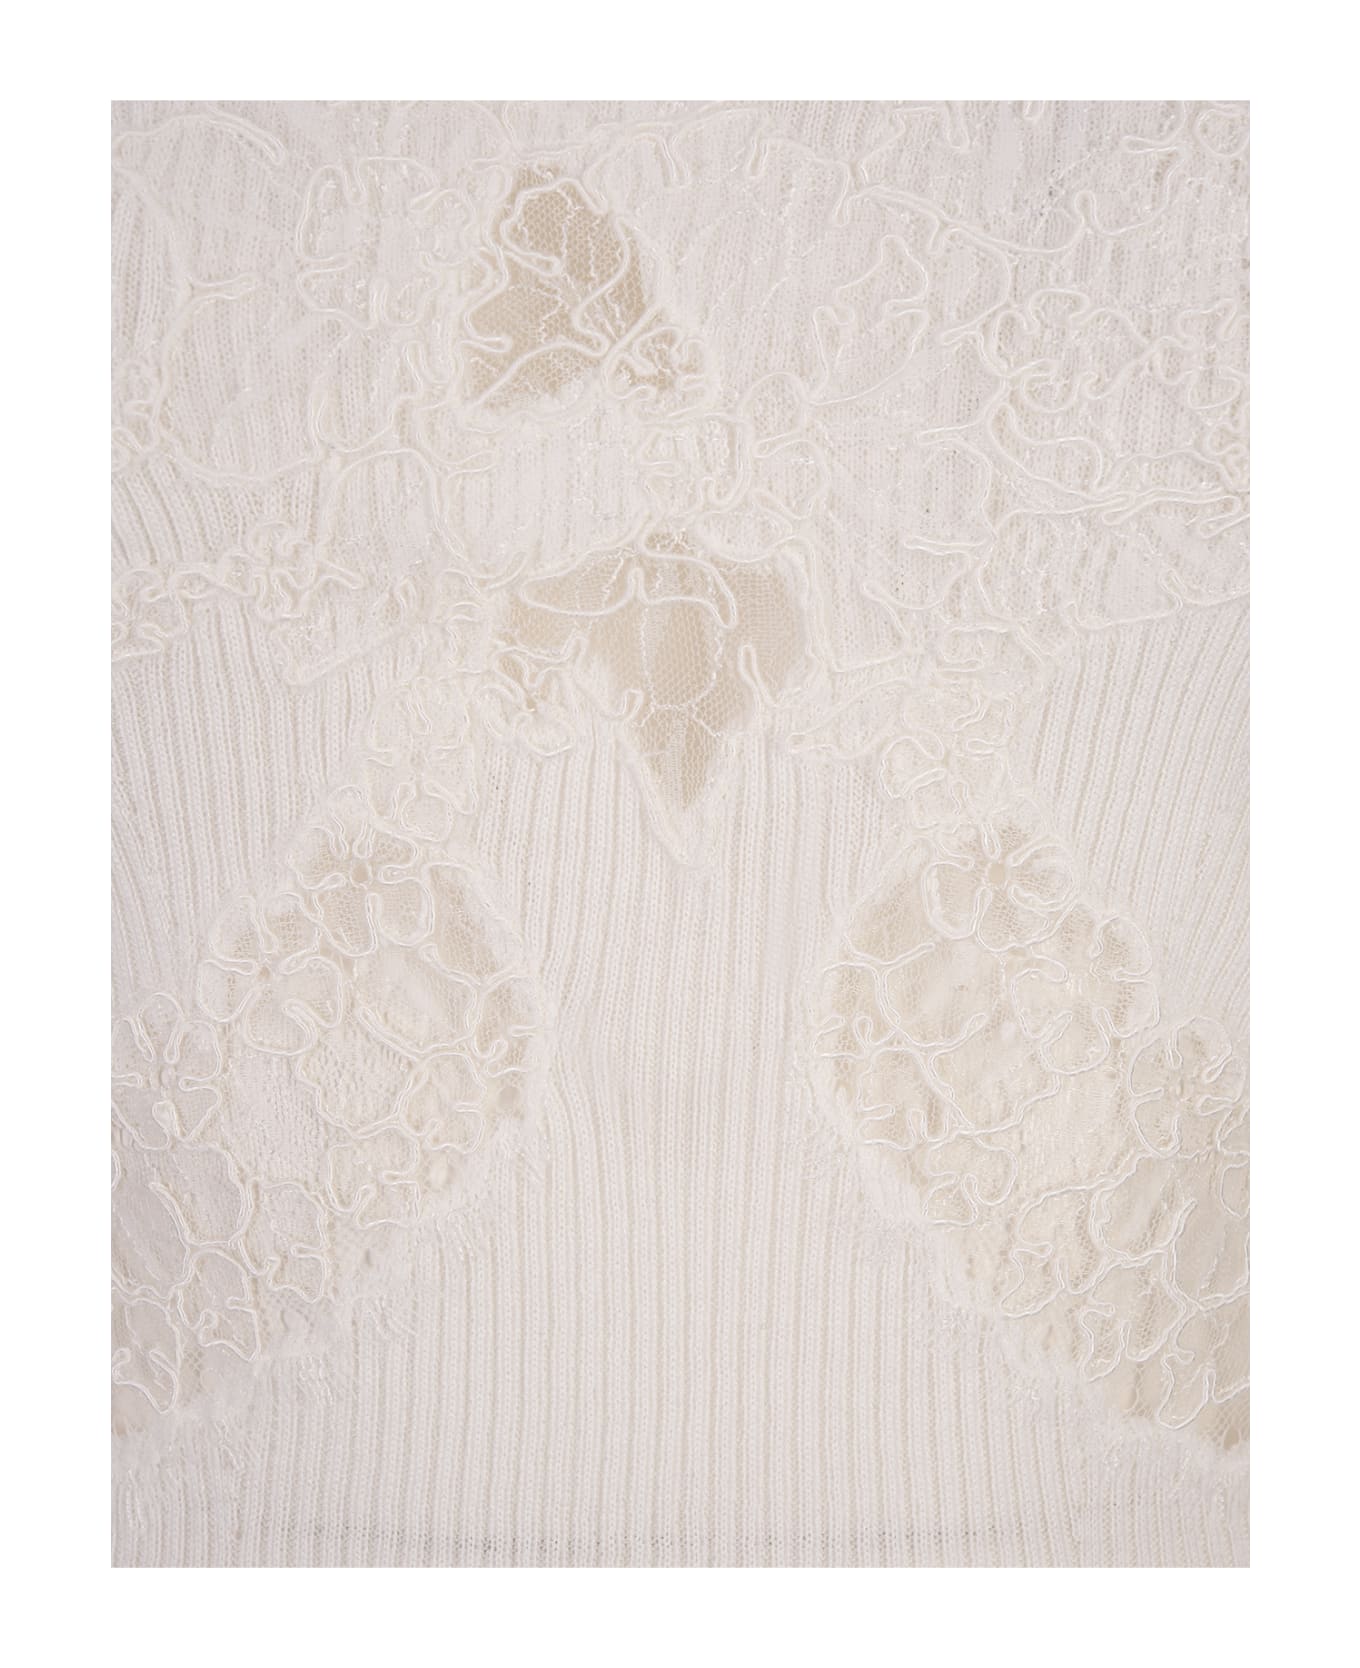 Ermanno Scervino White Sweater With Lace And Boat Neckline - White